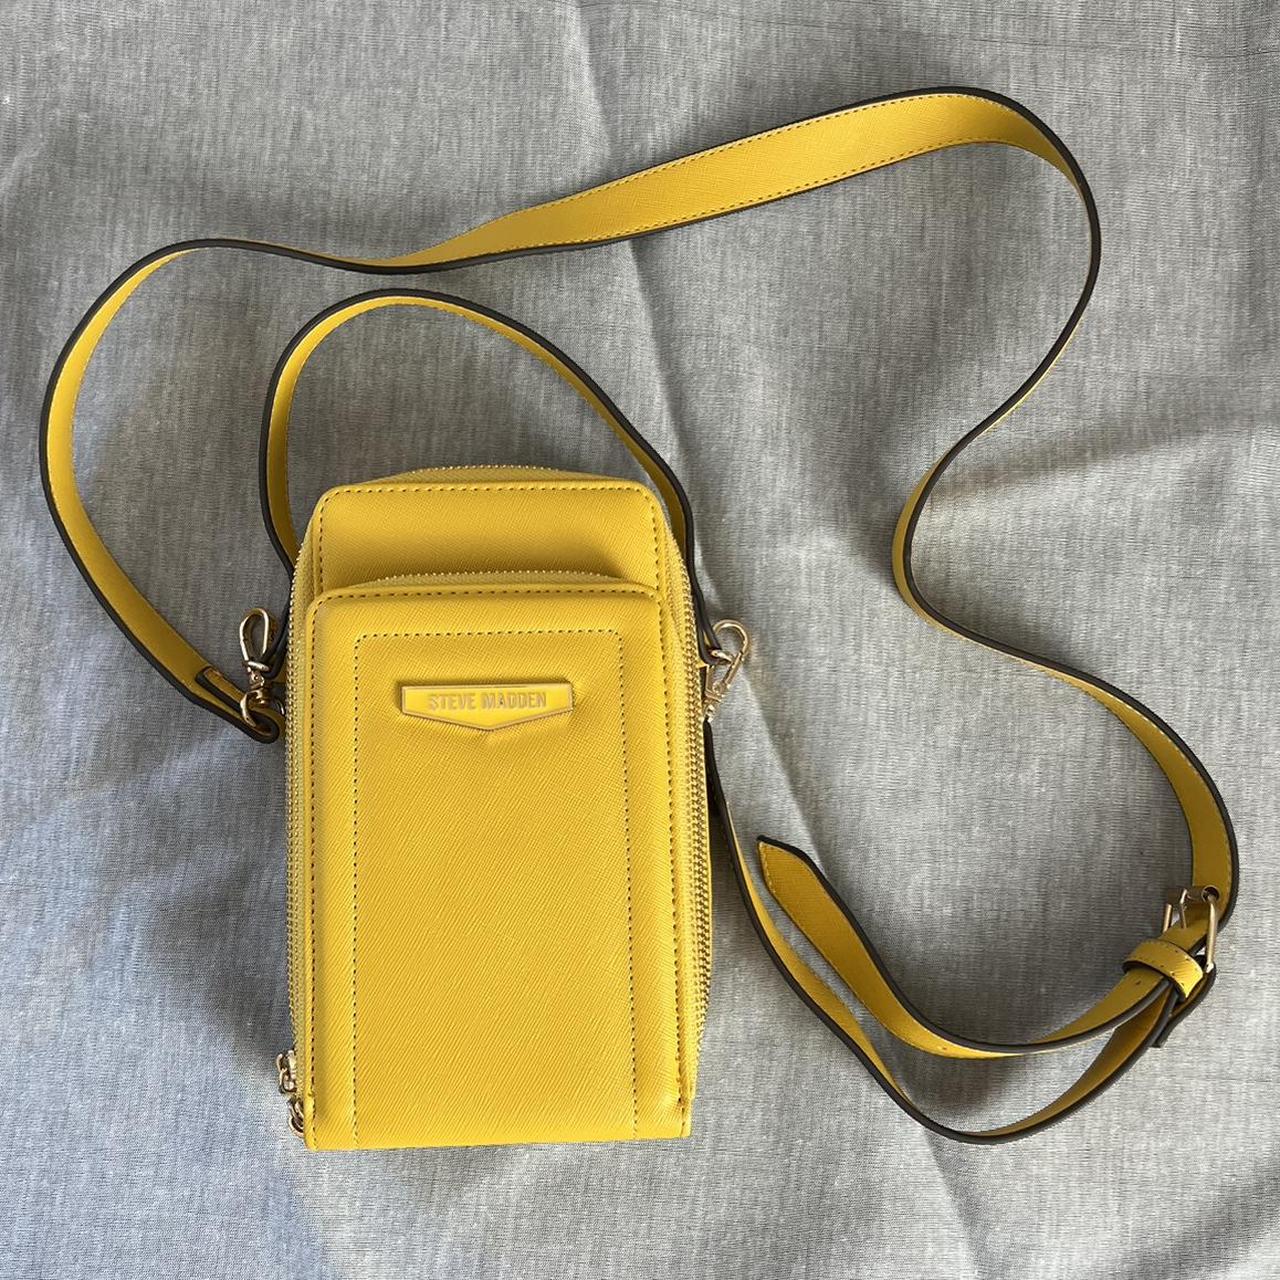 Steve Madden Cross-body Bag in Yellow